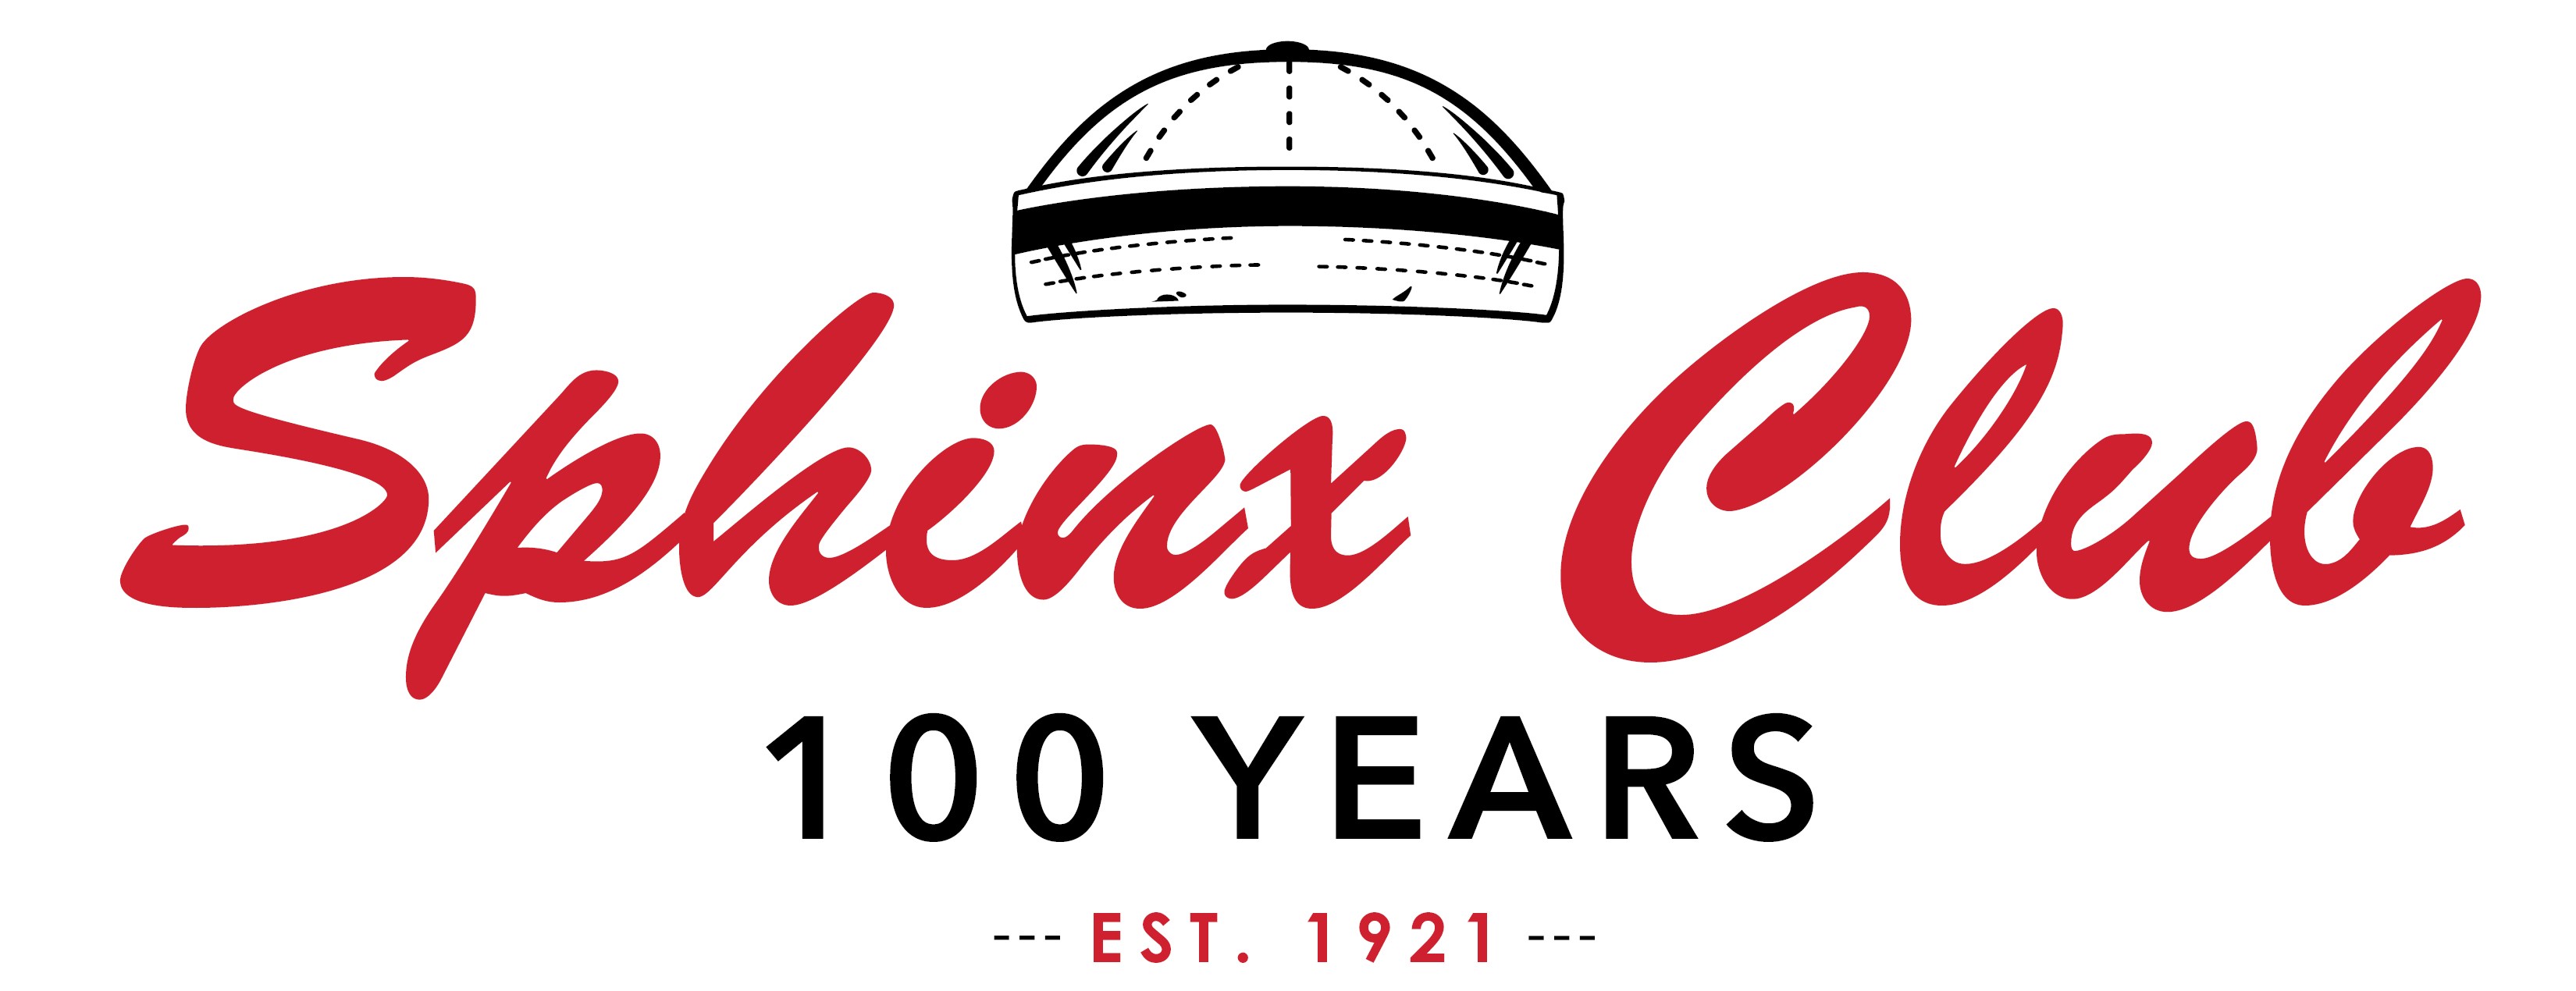 Sphinx Club 100 Year Celebration